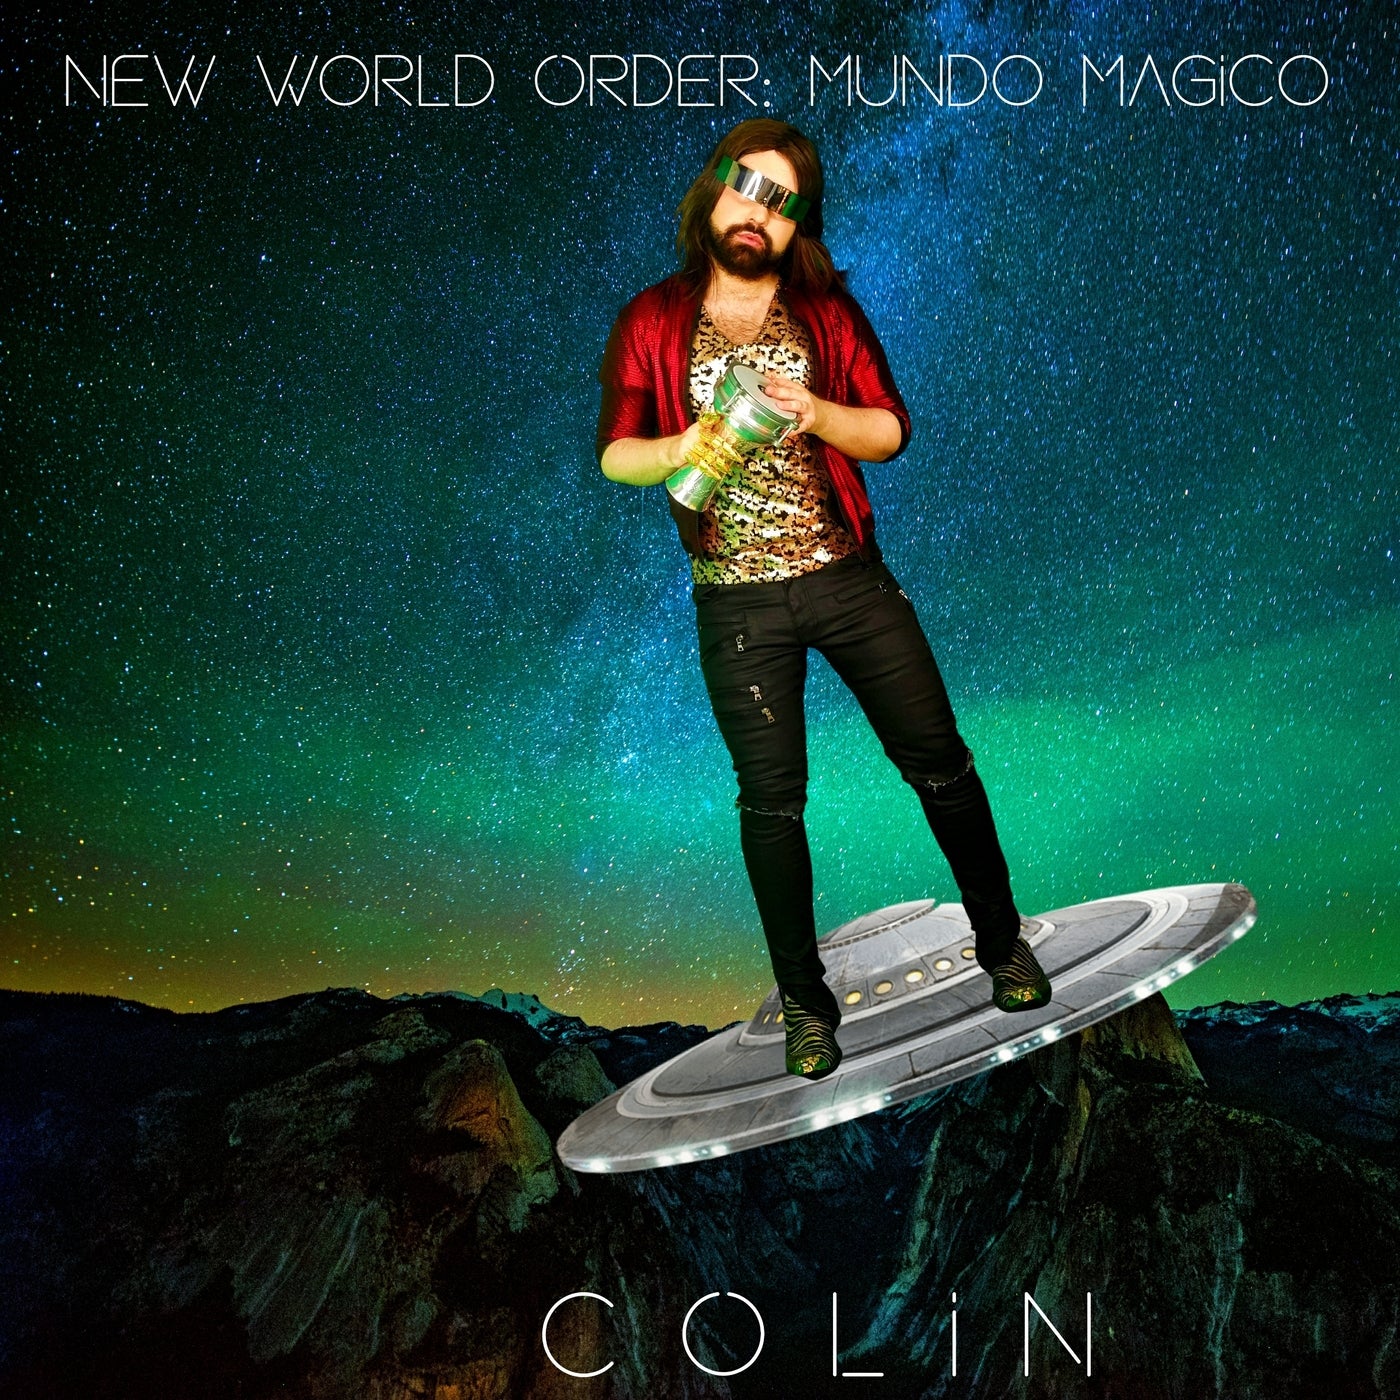 New World Order: Mundo Magico